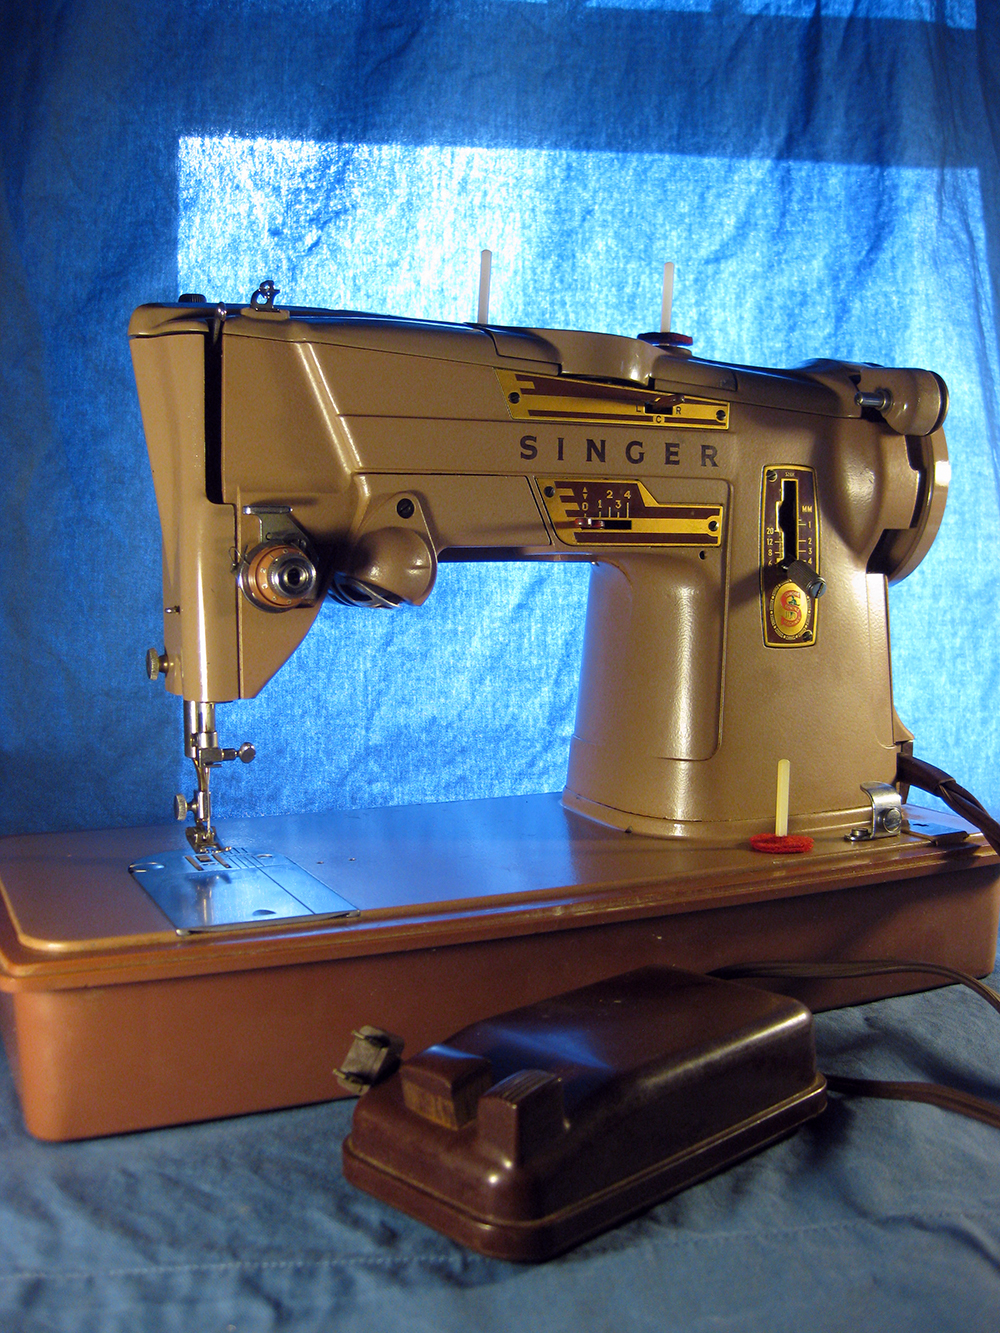 Singer 328k sewing machine instruction manual